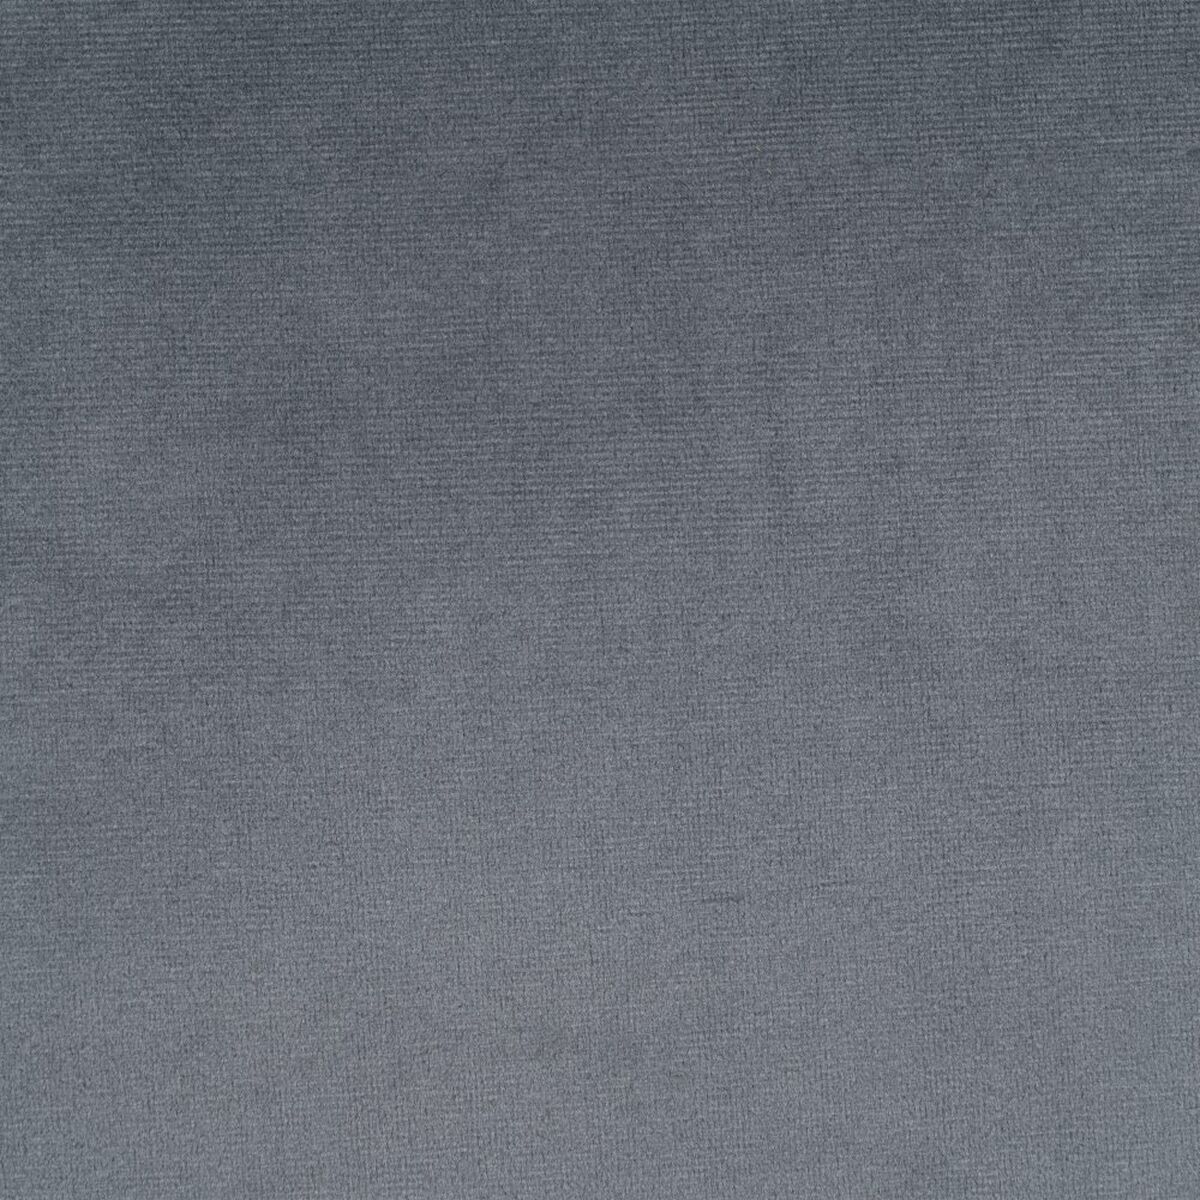 Cushion Grey Polyester 45 x 45 cm